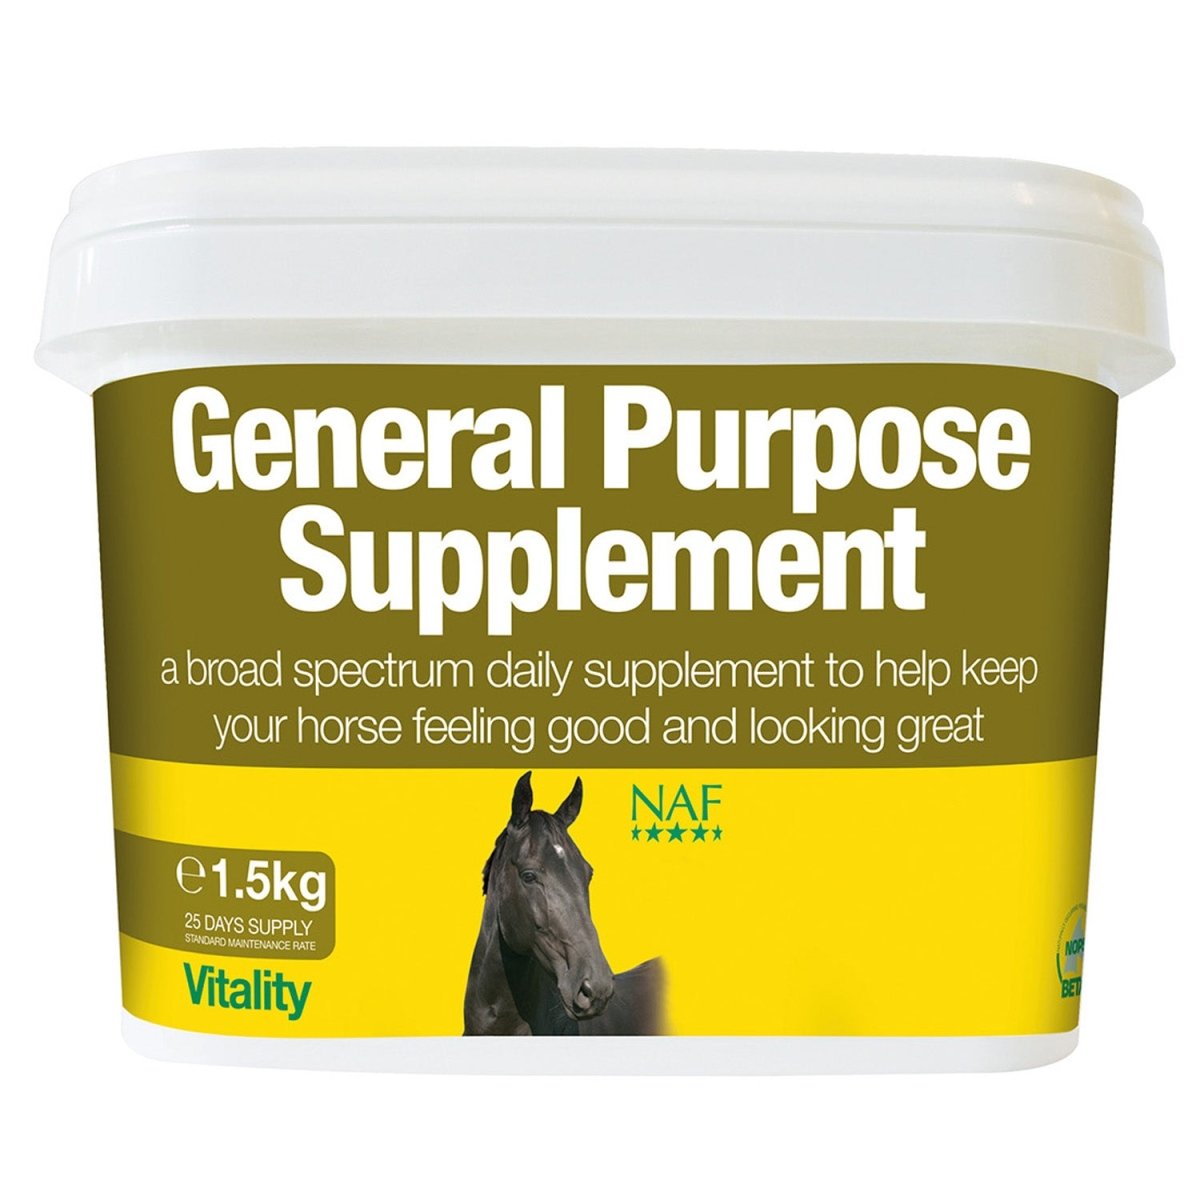 Naf General Purpose Supplement - 1.5Kg -